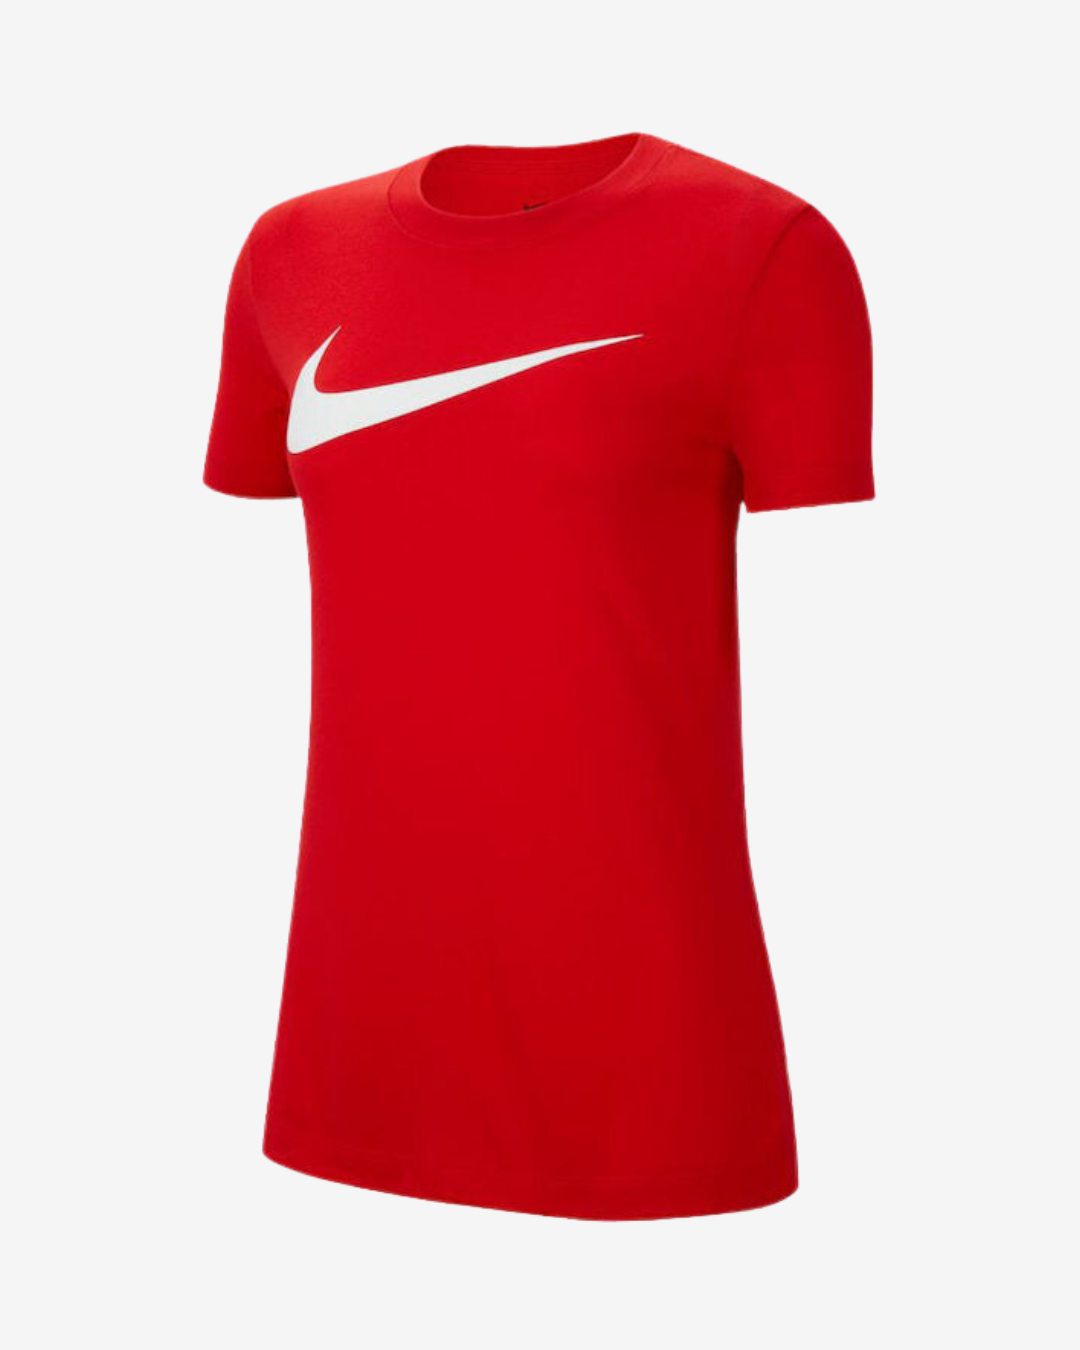 Billede af Nike Dri-fit park 20 dame t-shirt - Rød - Str. XS - Modish.dk